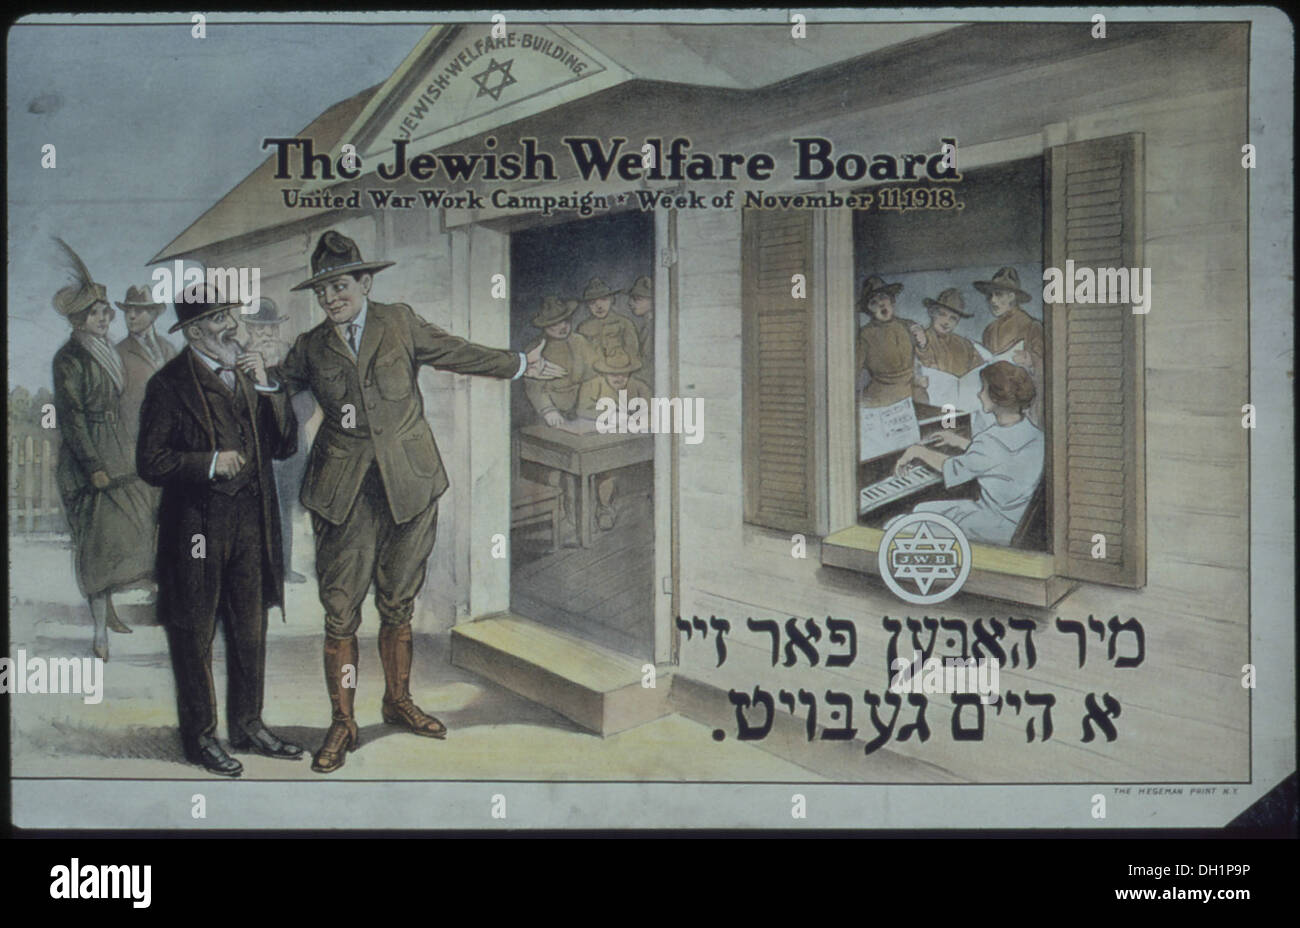 Il benessere ebraico di bordo. Regno guerra campagna di lavoro- settimana di Novembre 11, 1918, ca. 1917 - ca. 1919 512486 Foto Stock